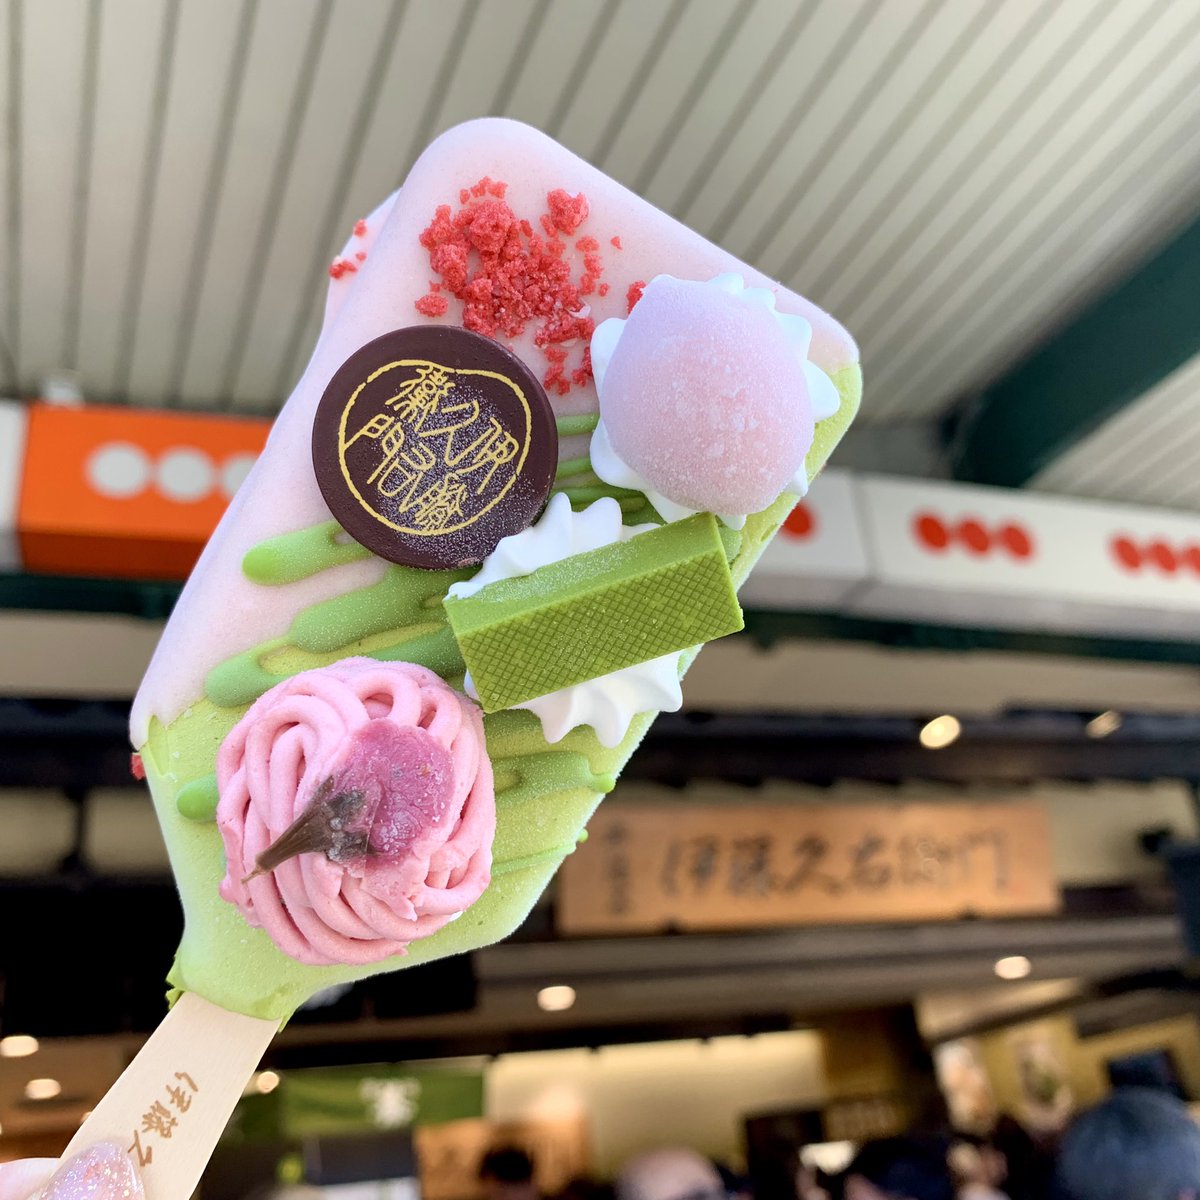 今日はアイスクリームの日なんだって❗️桜パフェアイスをお店の前で実食😋

#アイスクリームの日
#伊藤久右衛門